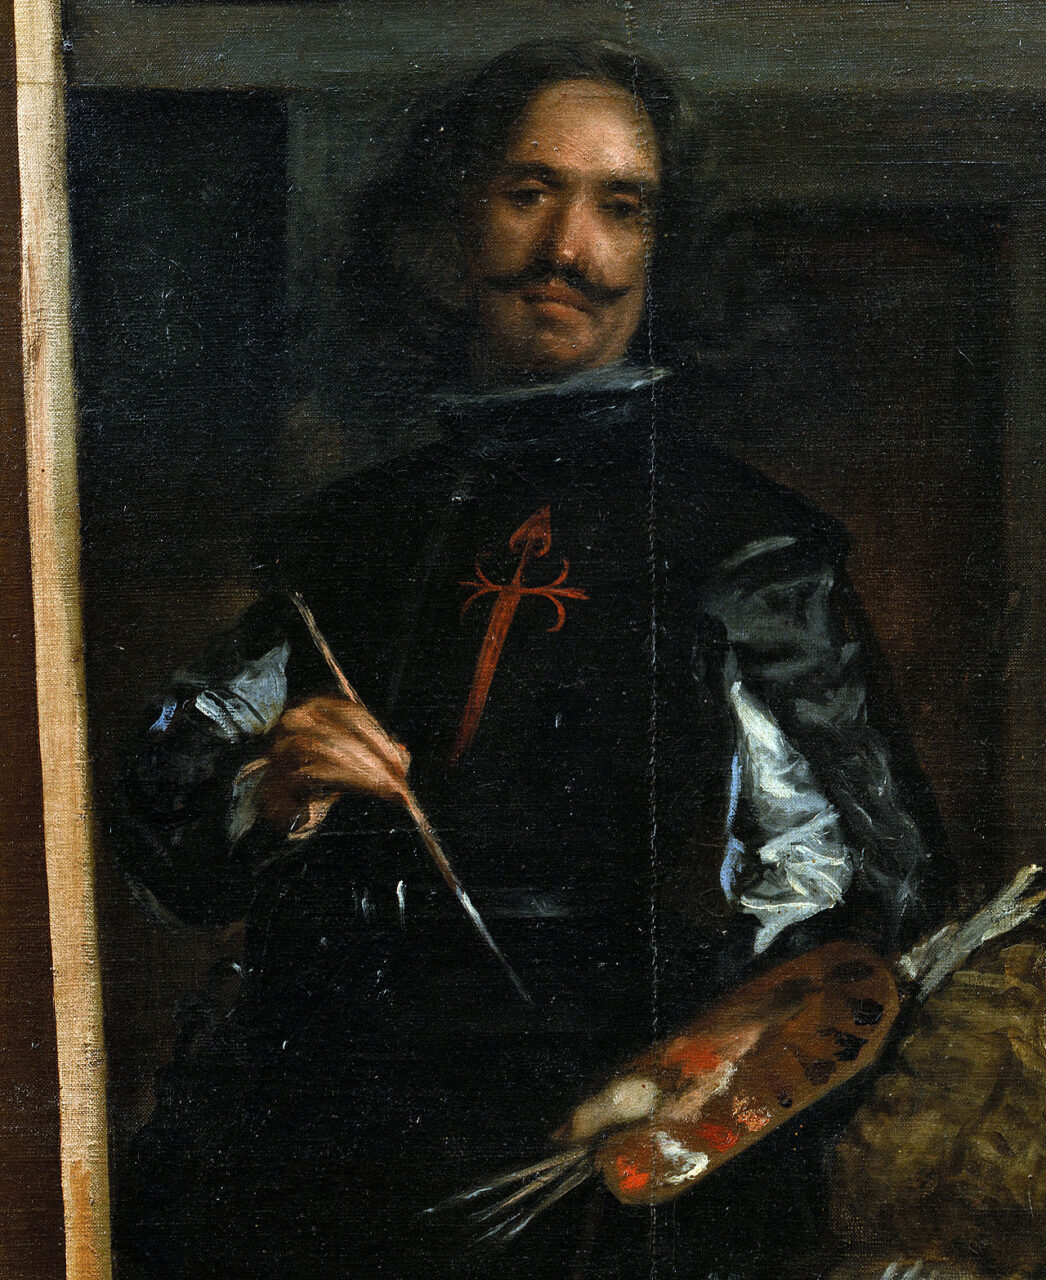 Portret mężczyzny trzymającego paletę i pędzelek, noszącego czarny strój z czerwonym krzyżem.